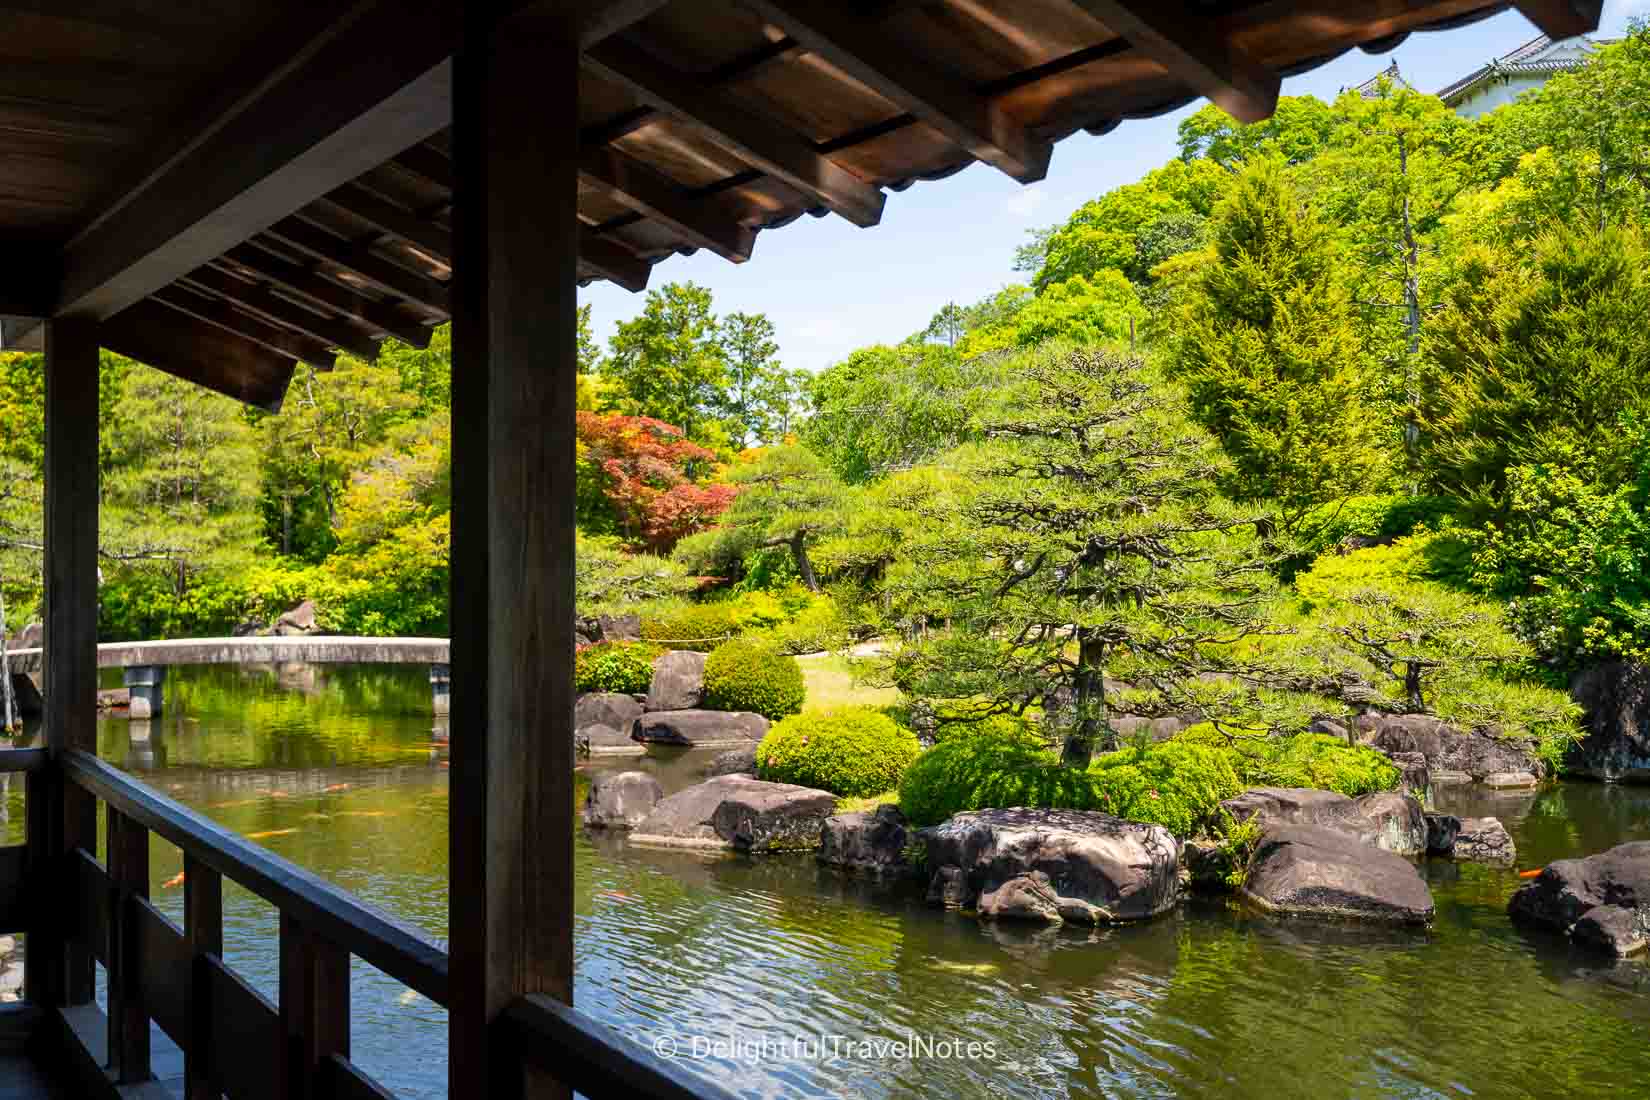 Koko-en main garden with pond and bridge.